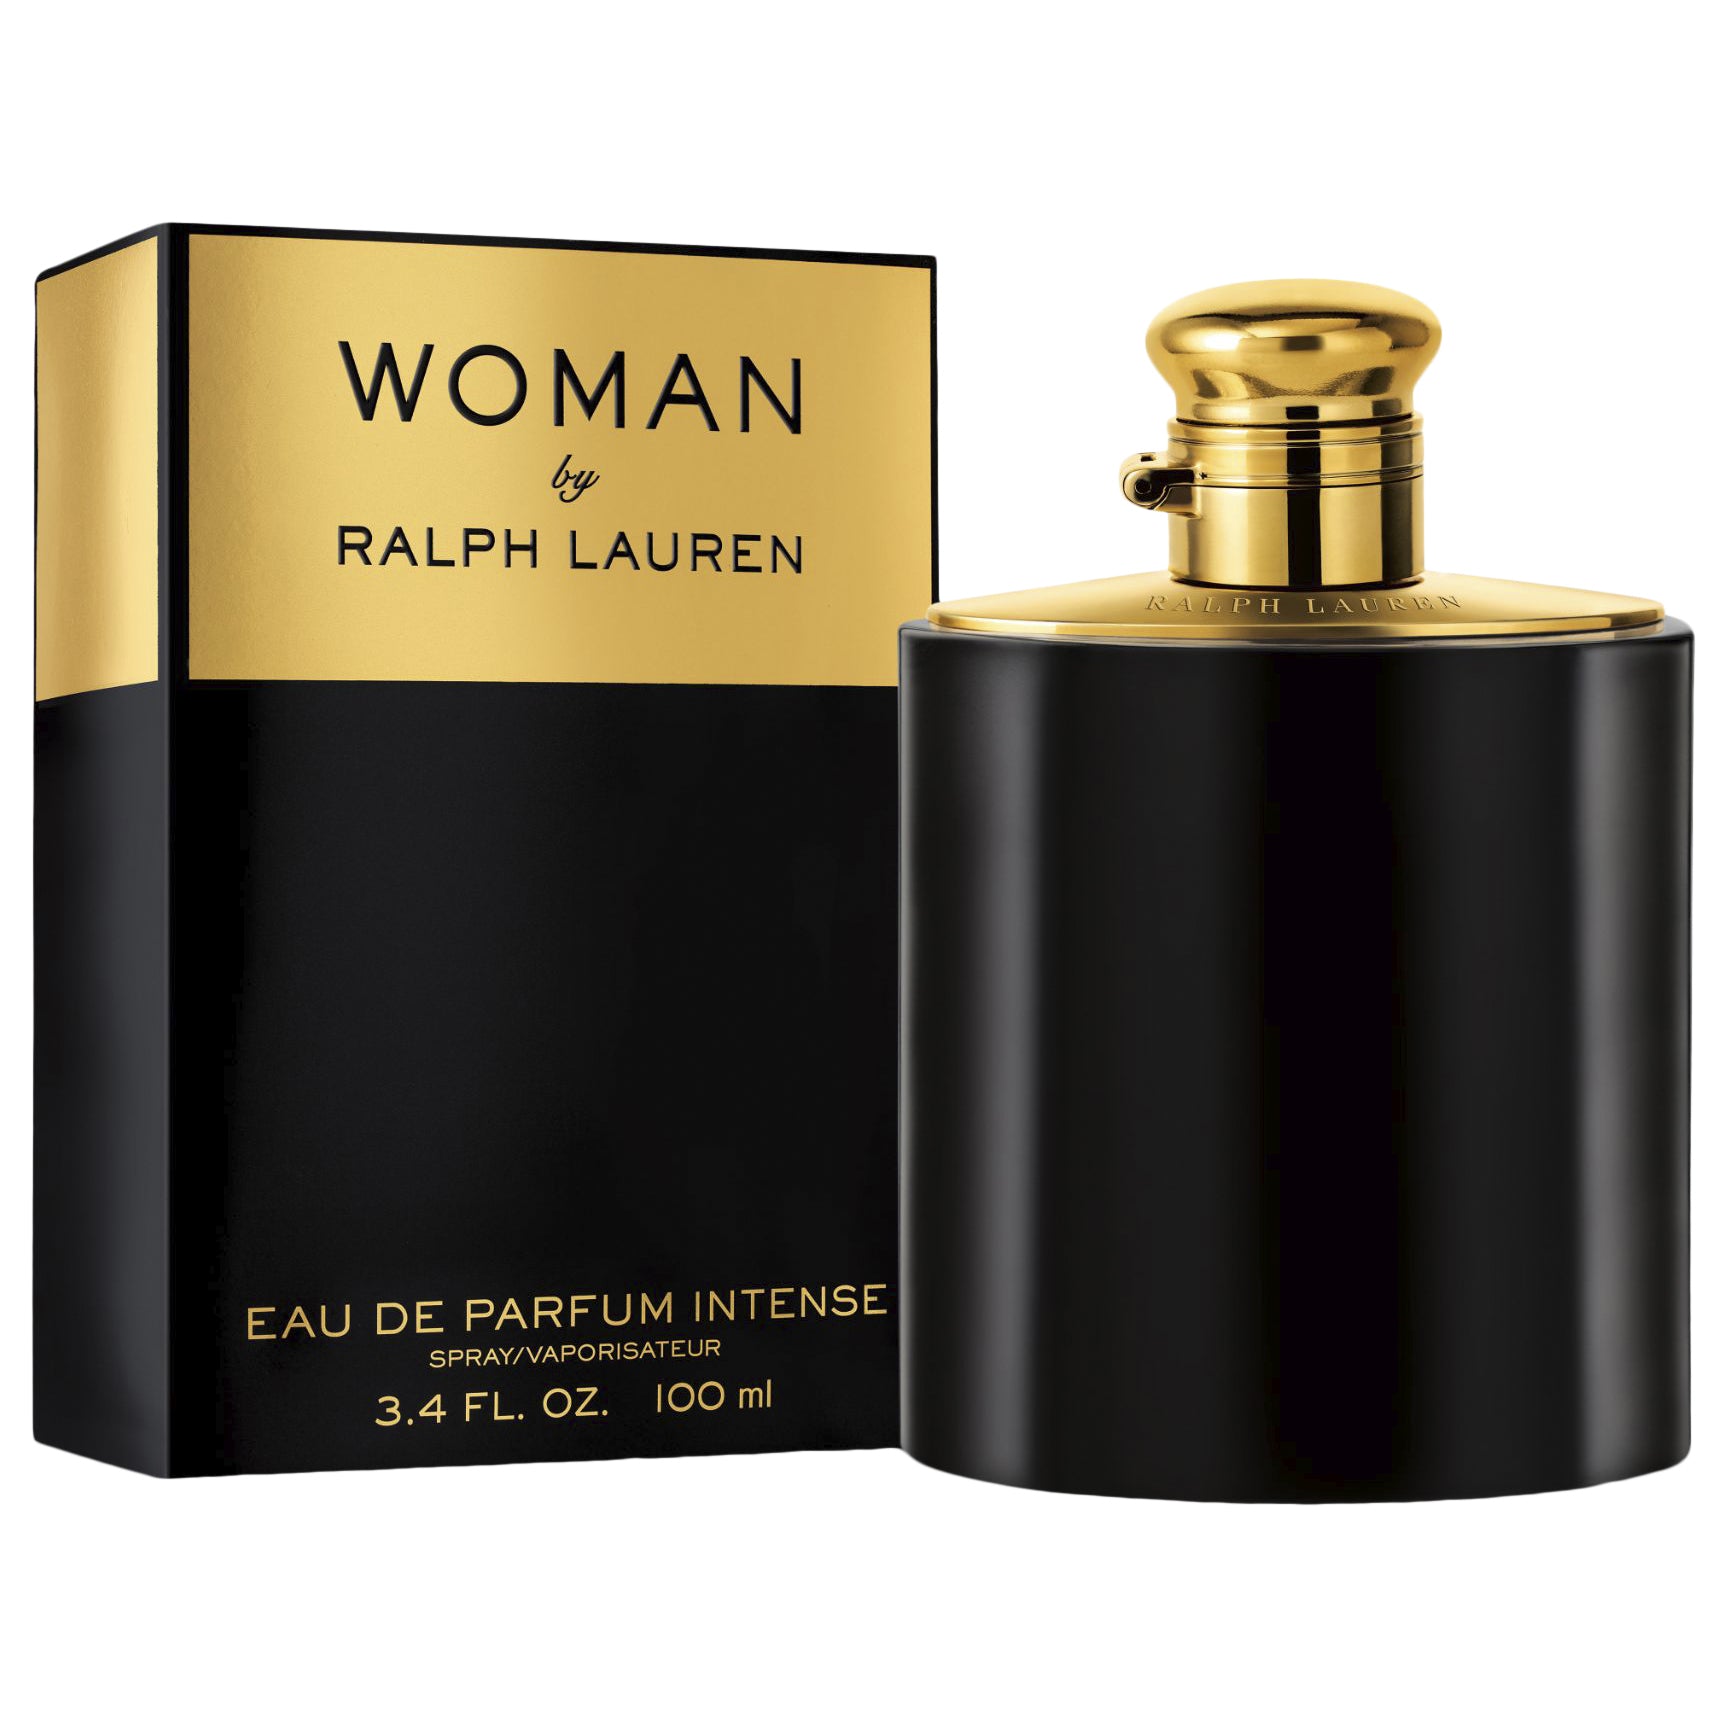 Ralph Lauren Woman for Women by Ralph Lauren Eau de Parfum Spray